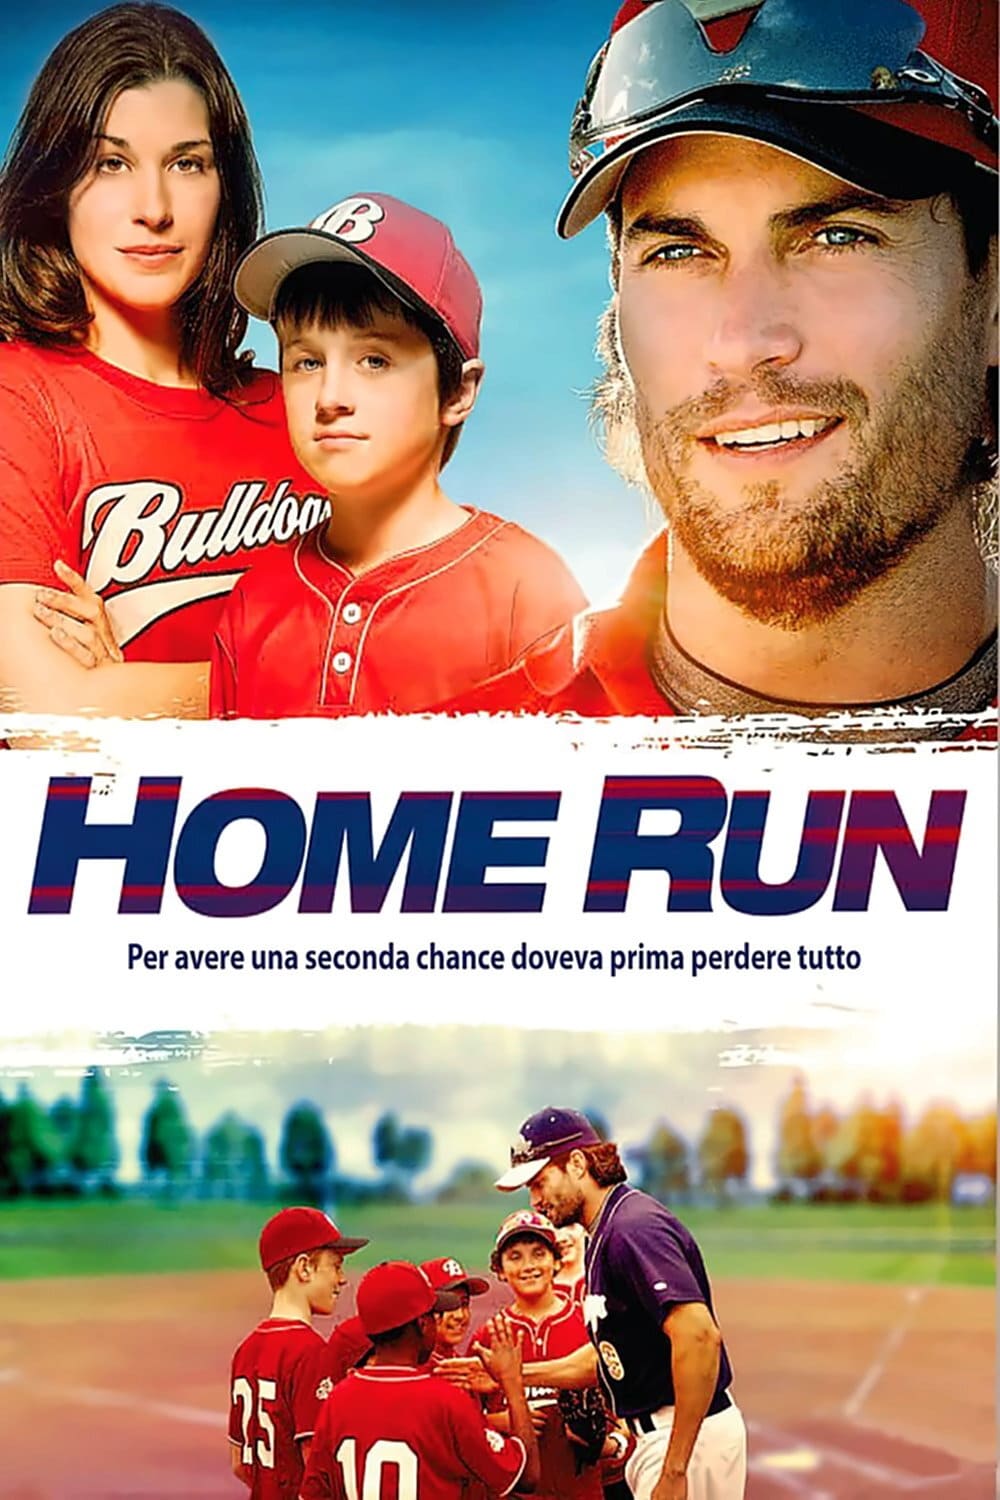 Home Run film